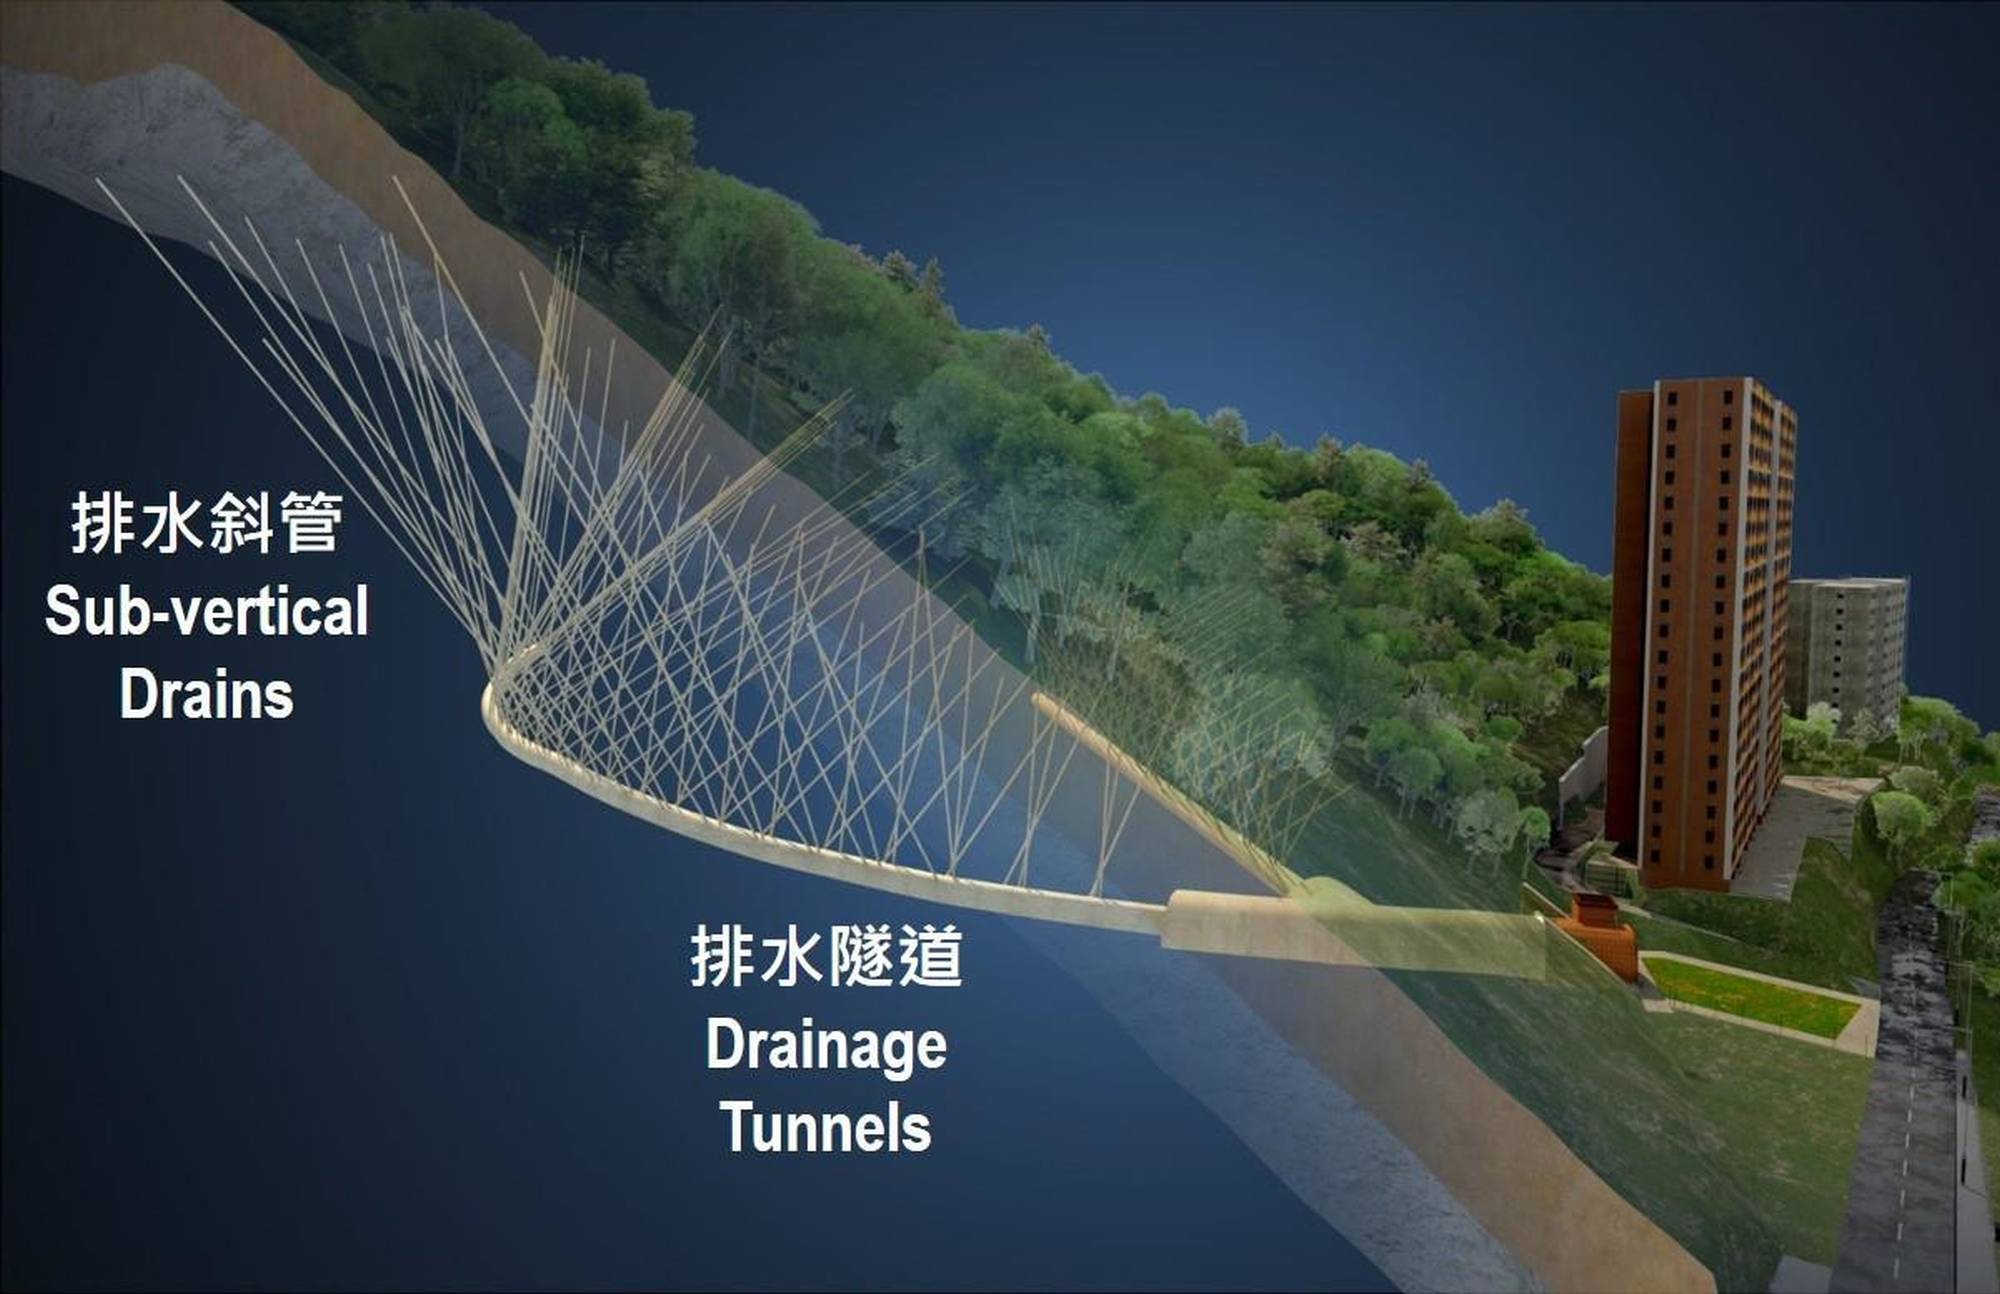 “宝珊排水隧道”由两条排水隧道和172支排水斜管组成，并配有自动实时地下水监测系统，可调控宝珊地段的地下水位，从而减低发生大型山泥倾泻的风险。